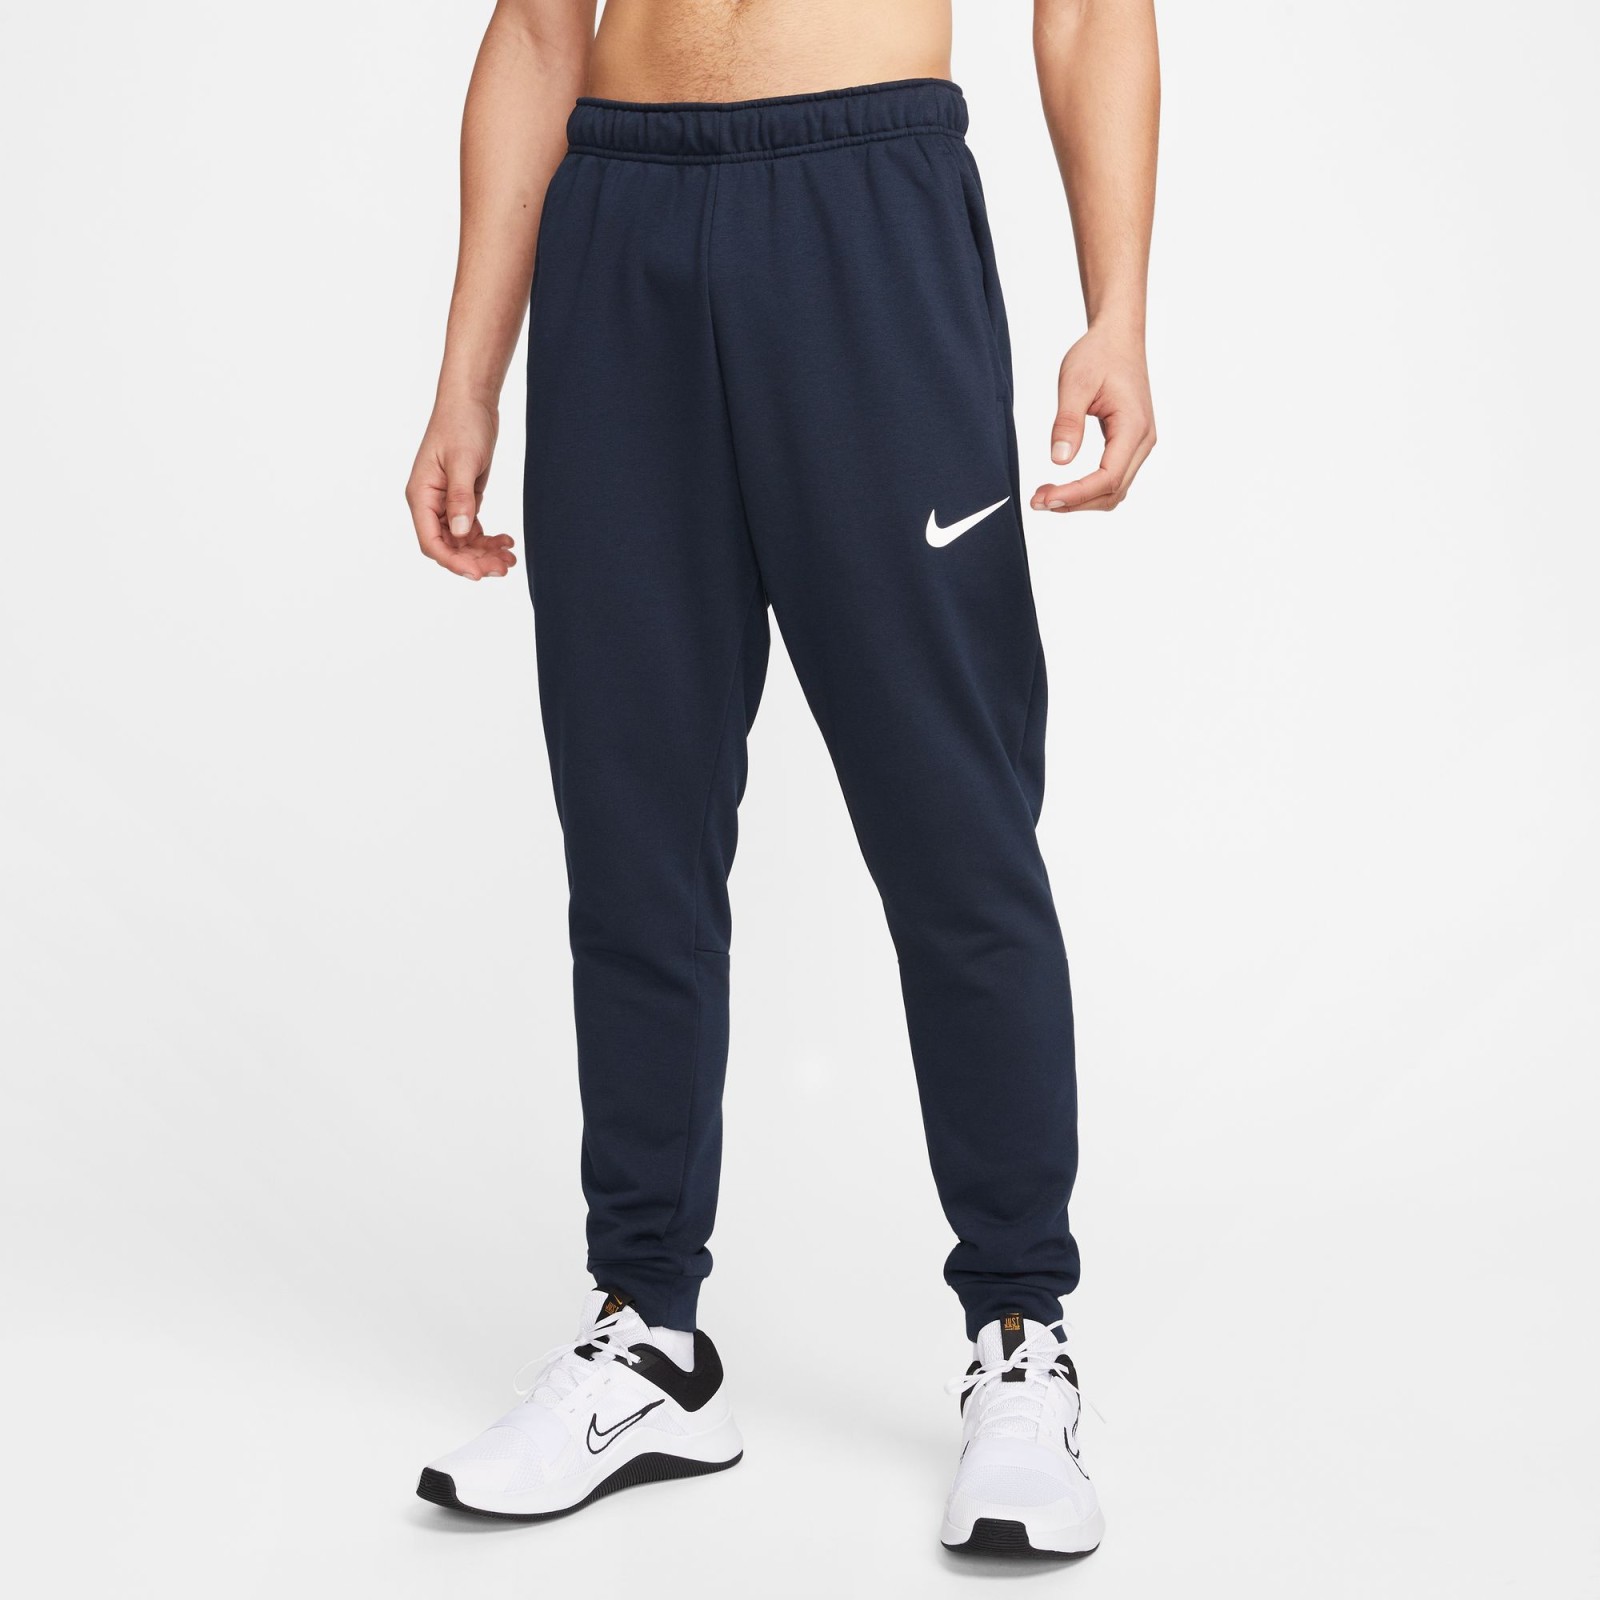 Levně Nike Dri-FIT S